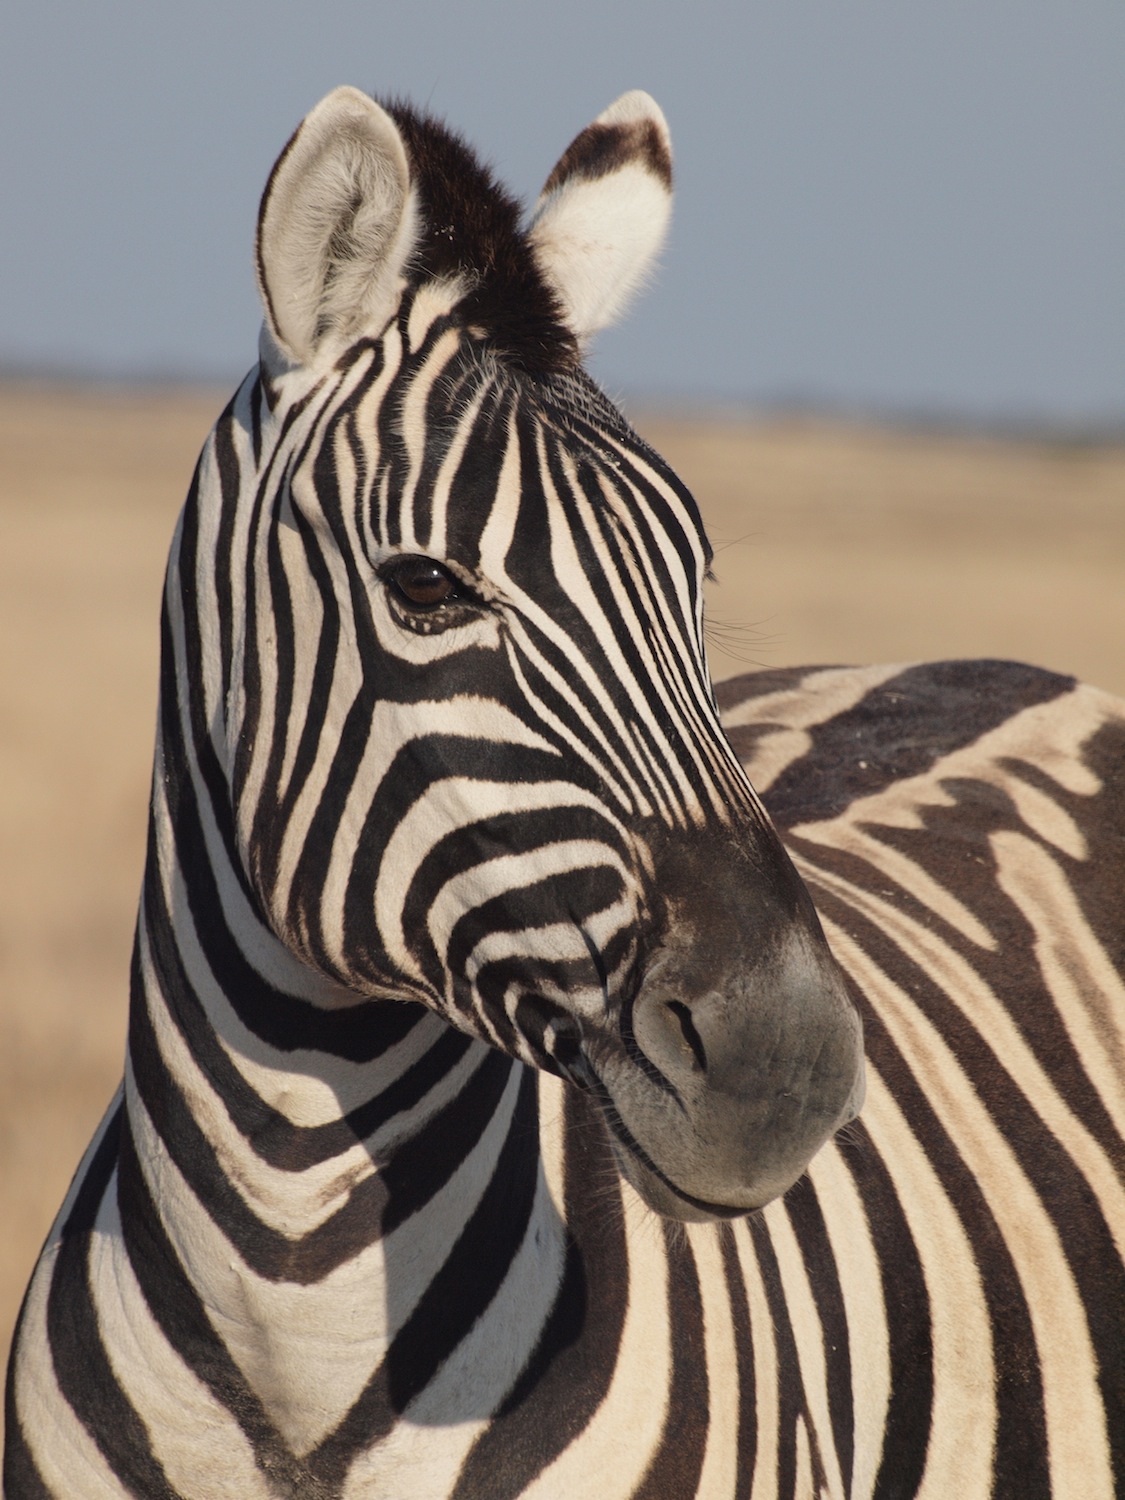 8月8日 波情報 アフリカの大自然で生きる動物達 エトーシャ国立公園 Nakisurfスタッフブログ ナキサーフボードカリフォルニア